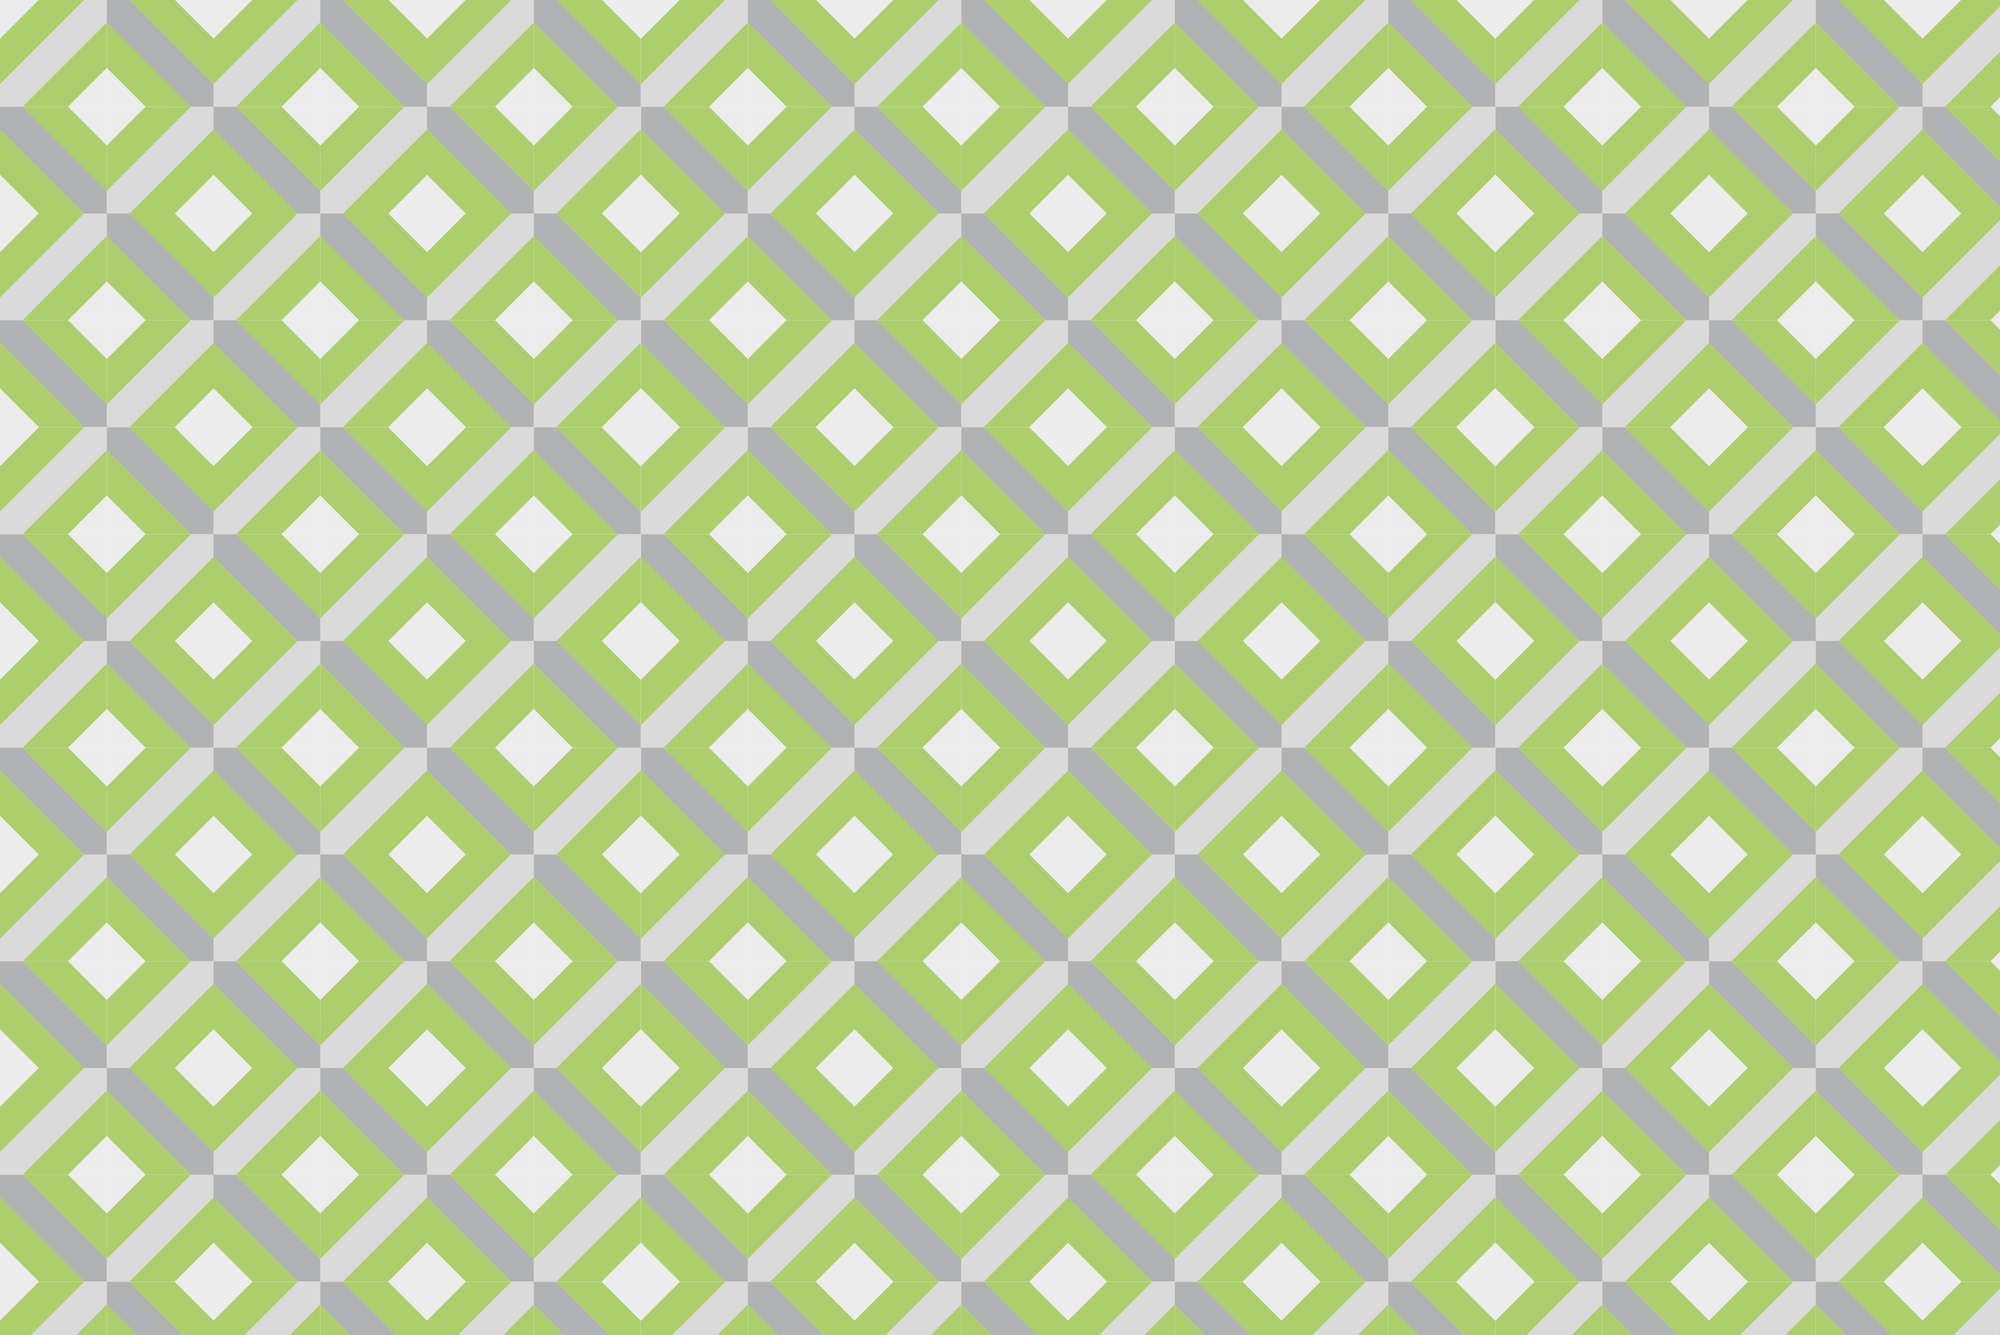             Design Fototapete Kästchen Motiv mit kleinen Quadraten grün auf Matt Glattvlies
        